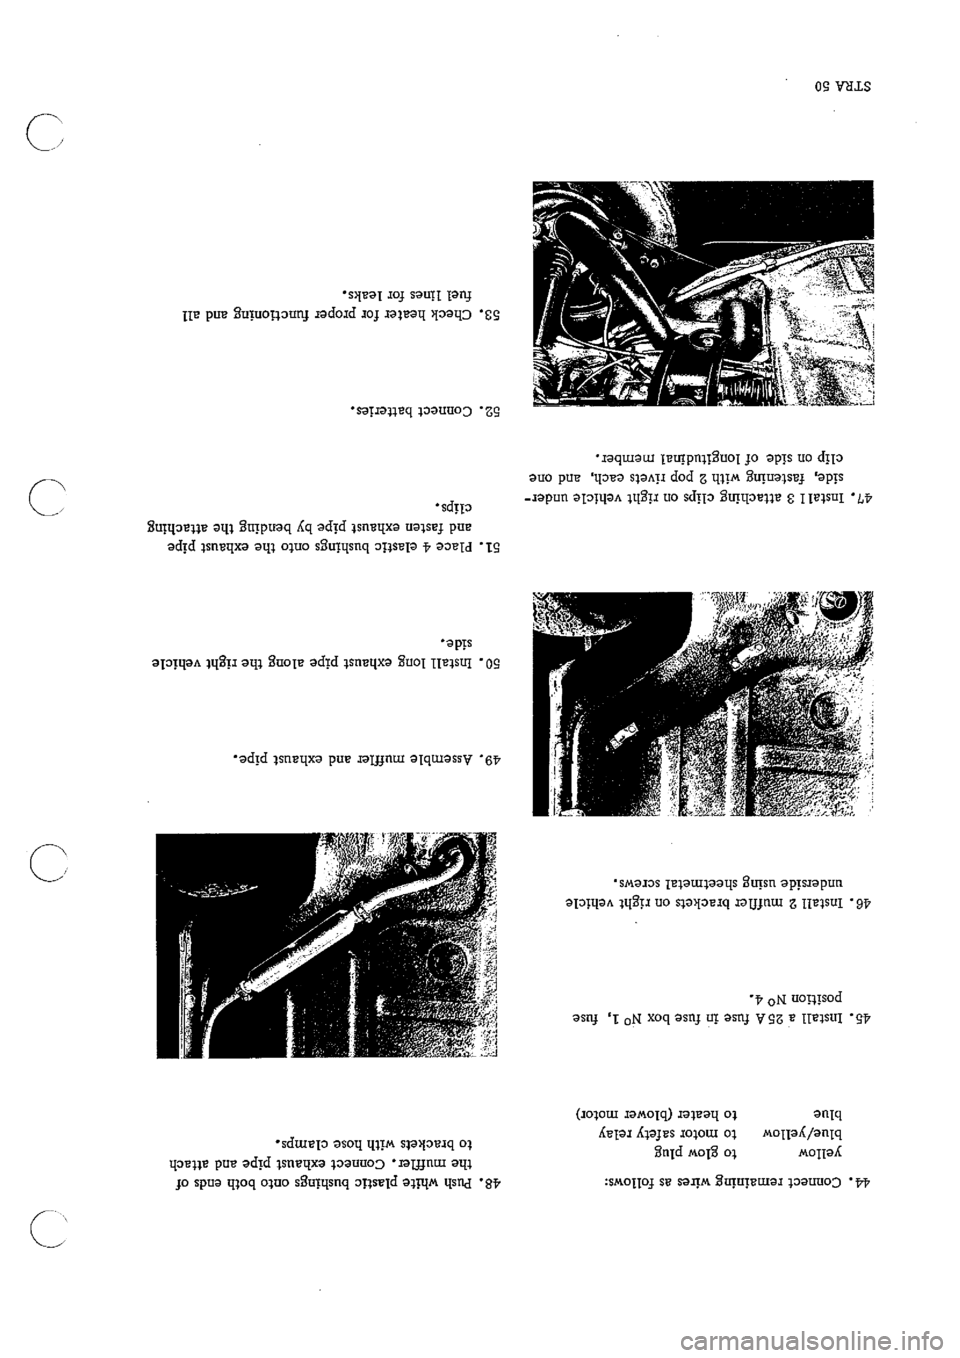 PORSCHE 911 1965 1.G Technical Instruction Manual Online 